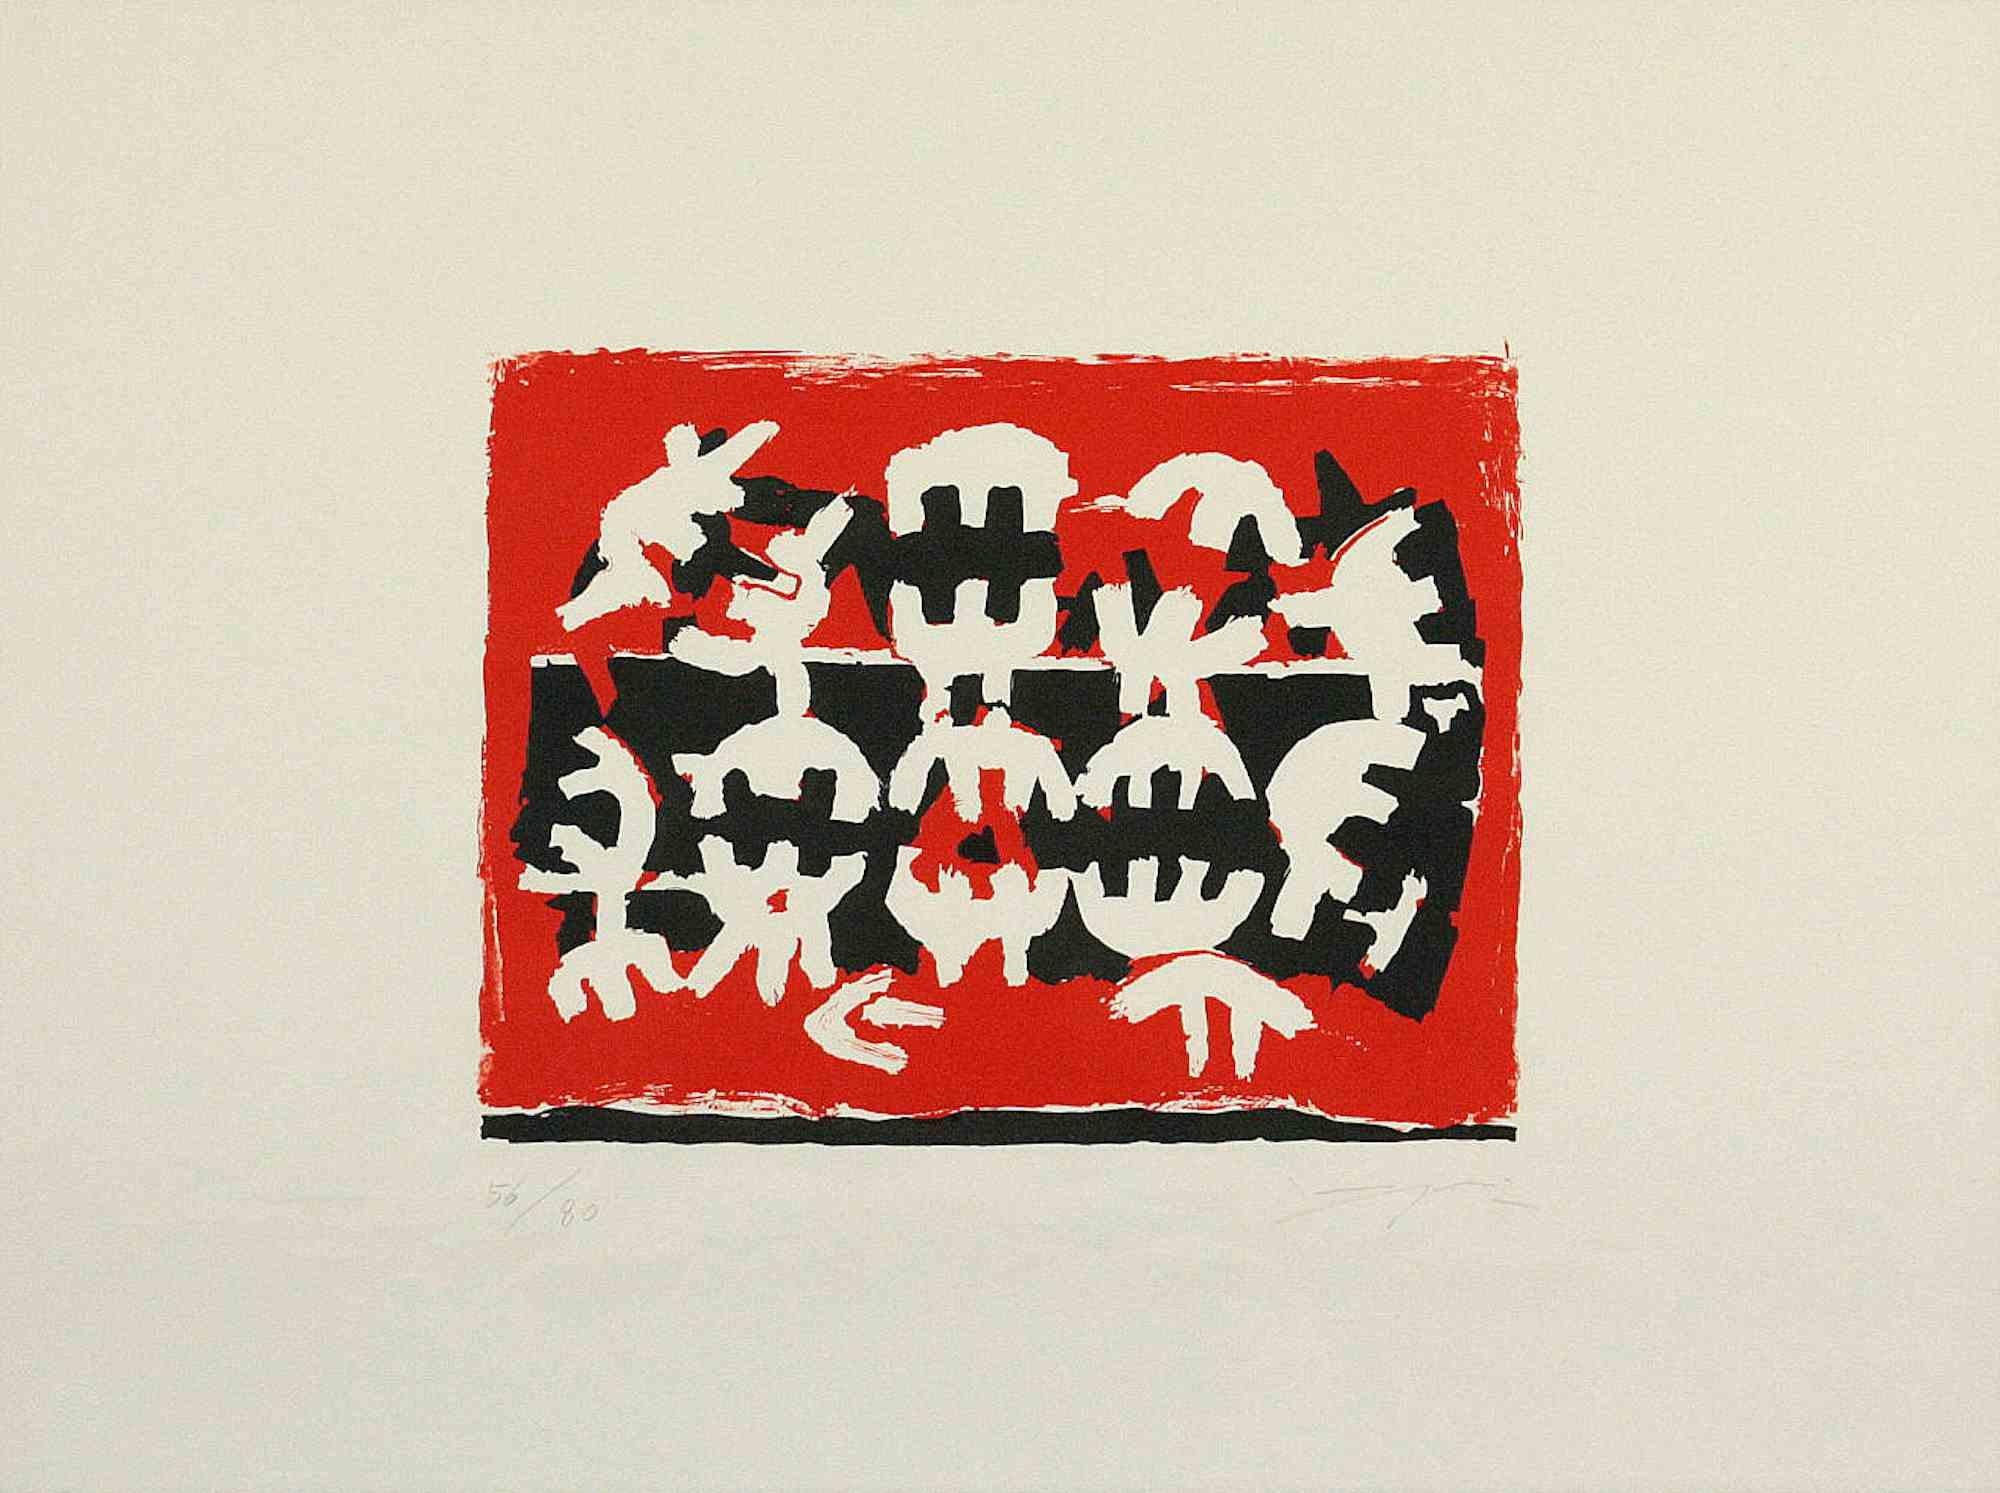 Untitled ist ein Druck von Giuseppe Capogrossi (Rom, 1900 - 1972).

Lithographie auf Papier

Handsigniert unten rechts, nummeriert, Auflage unten links, 56/80 Abzüge. Prägestempel der Erker Presse, St. Gallen unten links.

Das Kunstwerk besteht aus